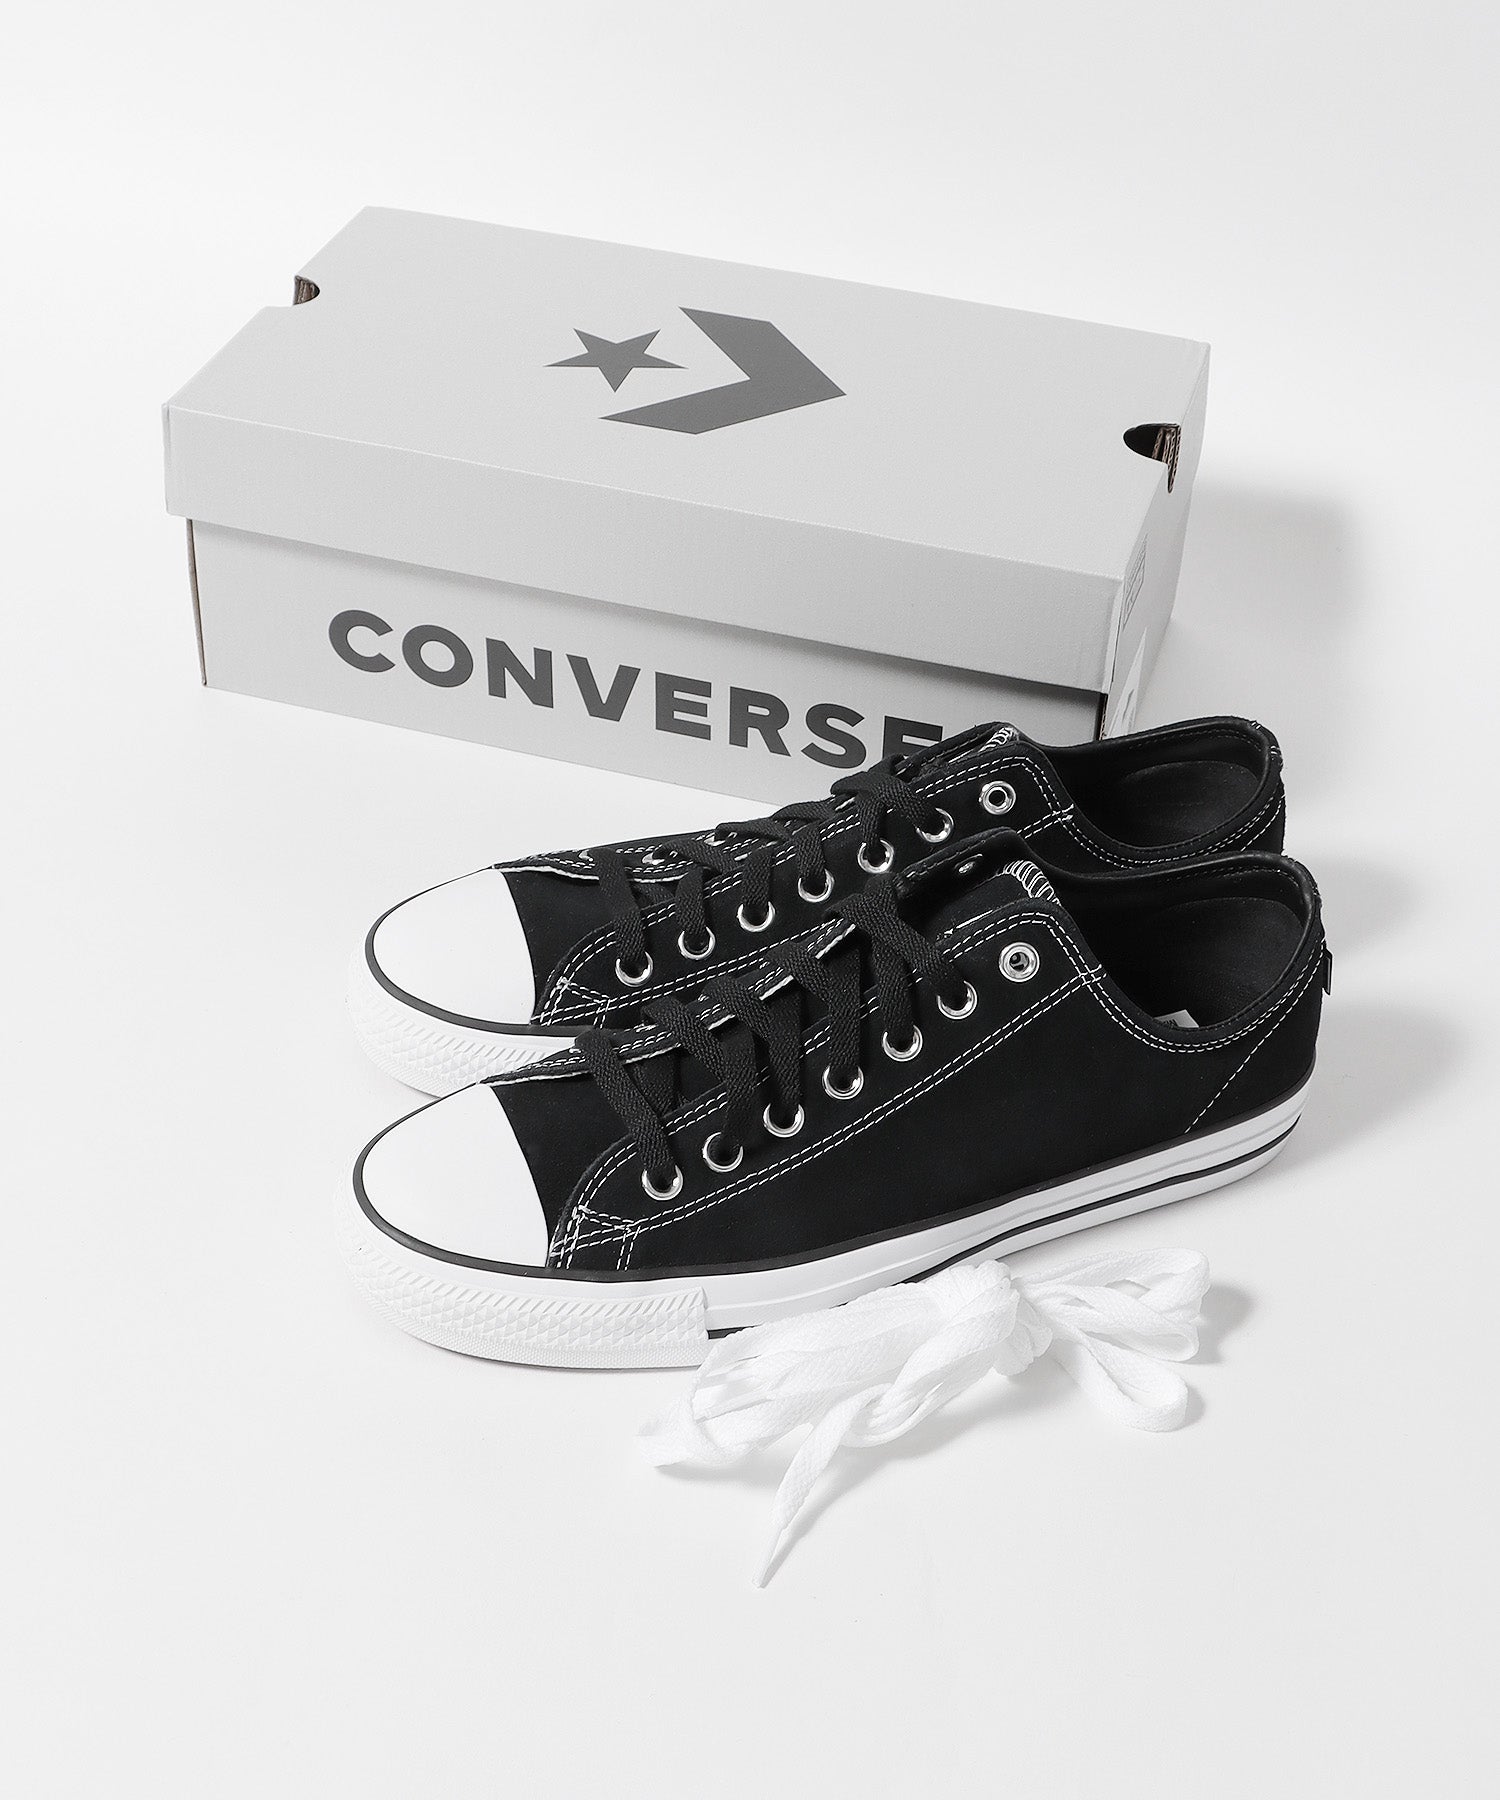 Converse cons靴